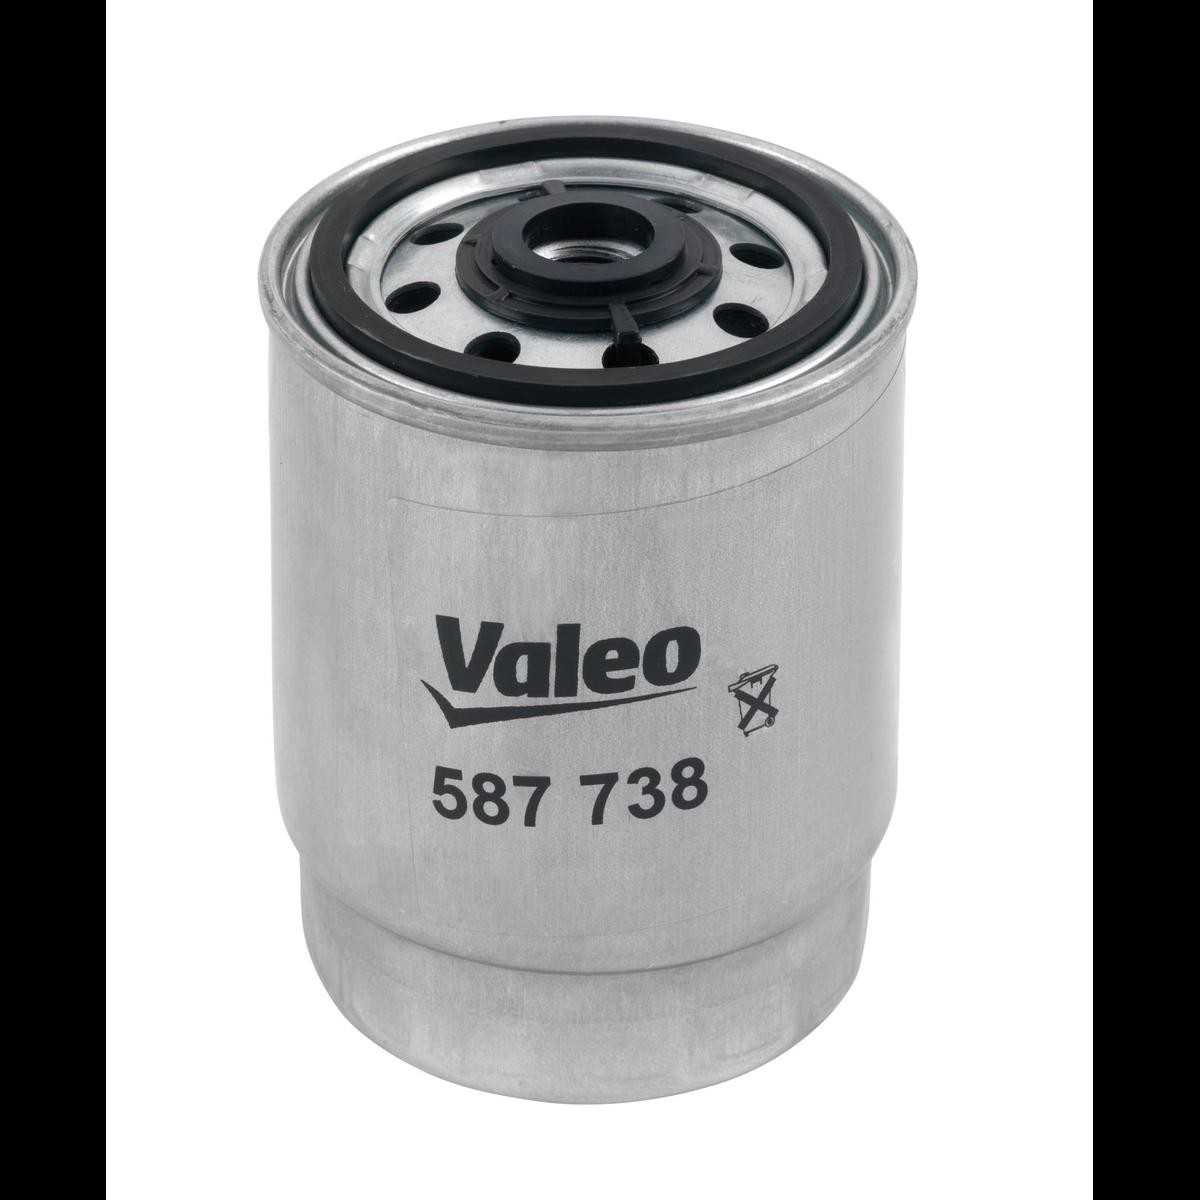 VALEO 587738 Fuel filter Spin-on Filter